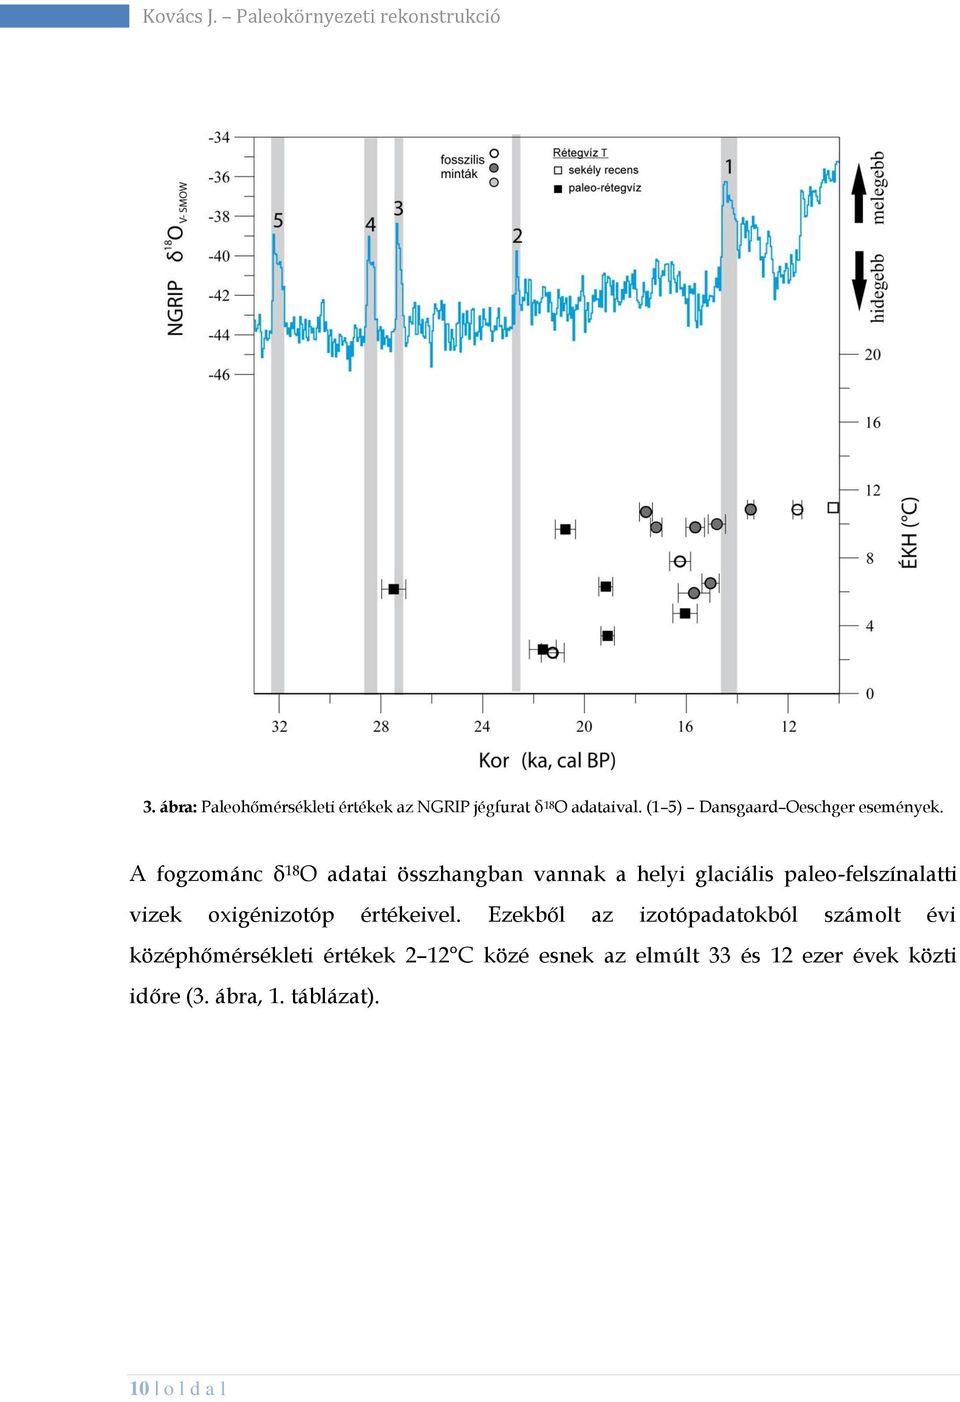 A fogzománc δ 18 O adatai összhangban vannak a helyi glaciális paleo-felszínalatti vizek oxigénizotóp